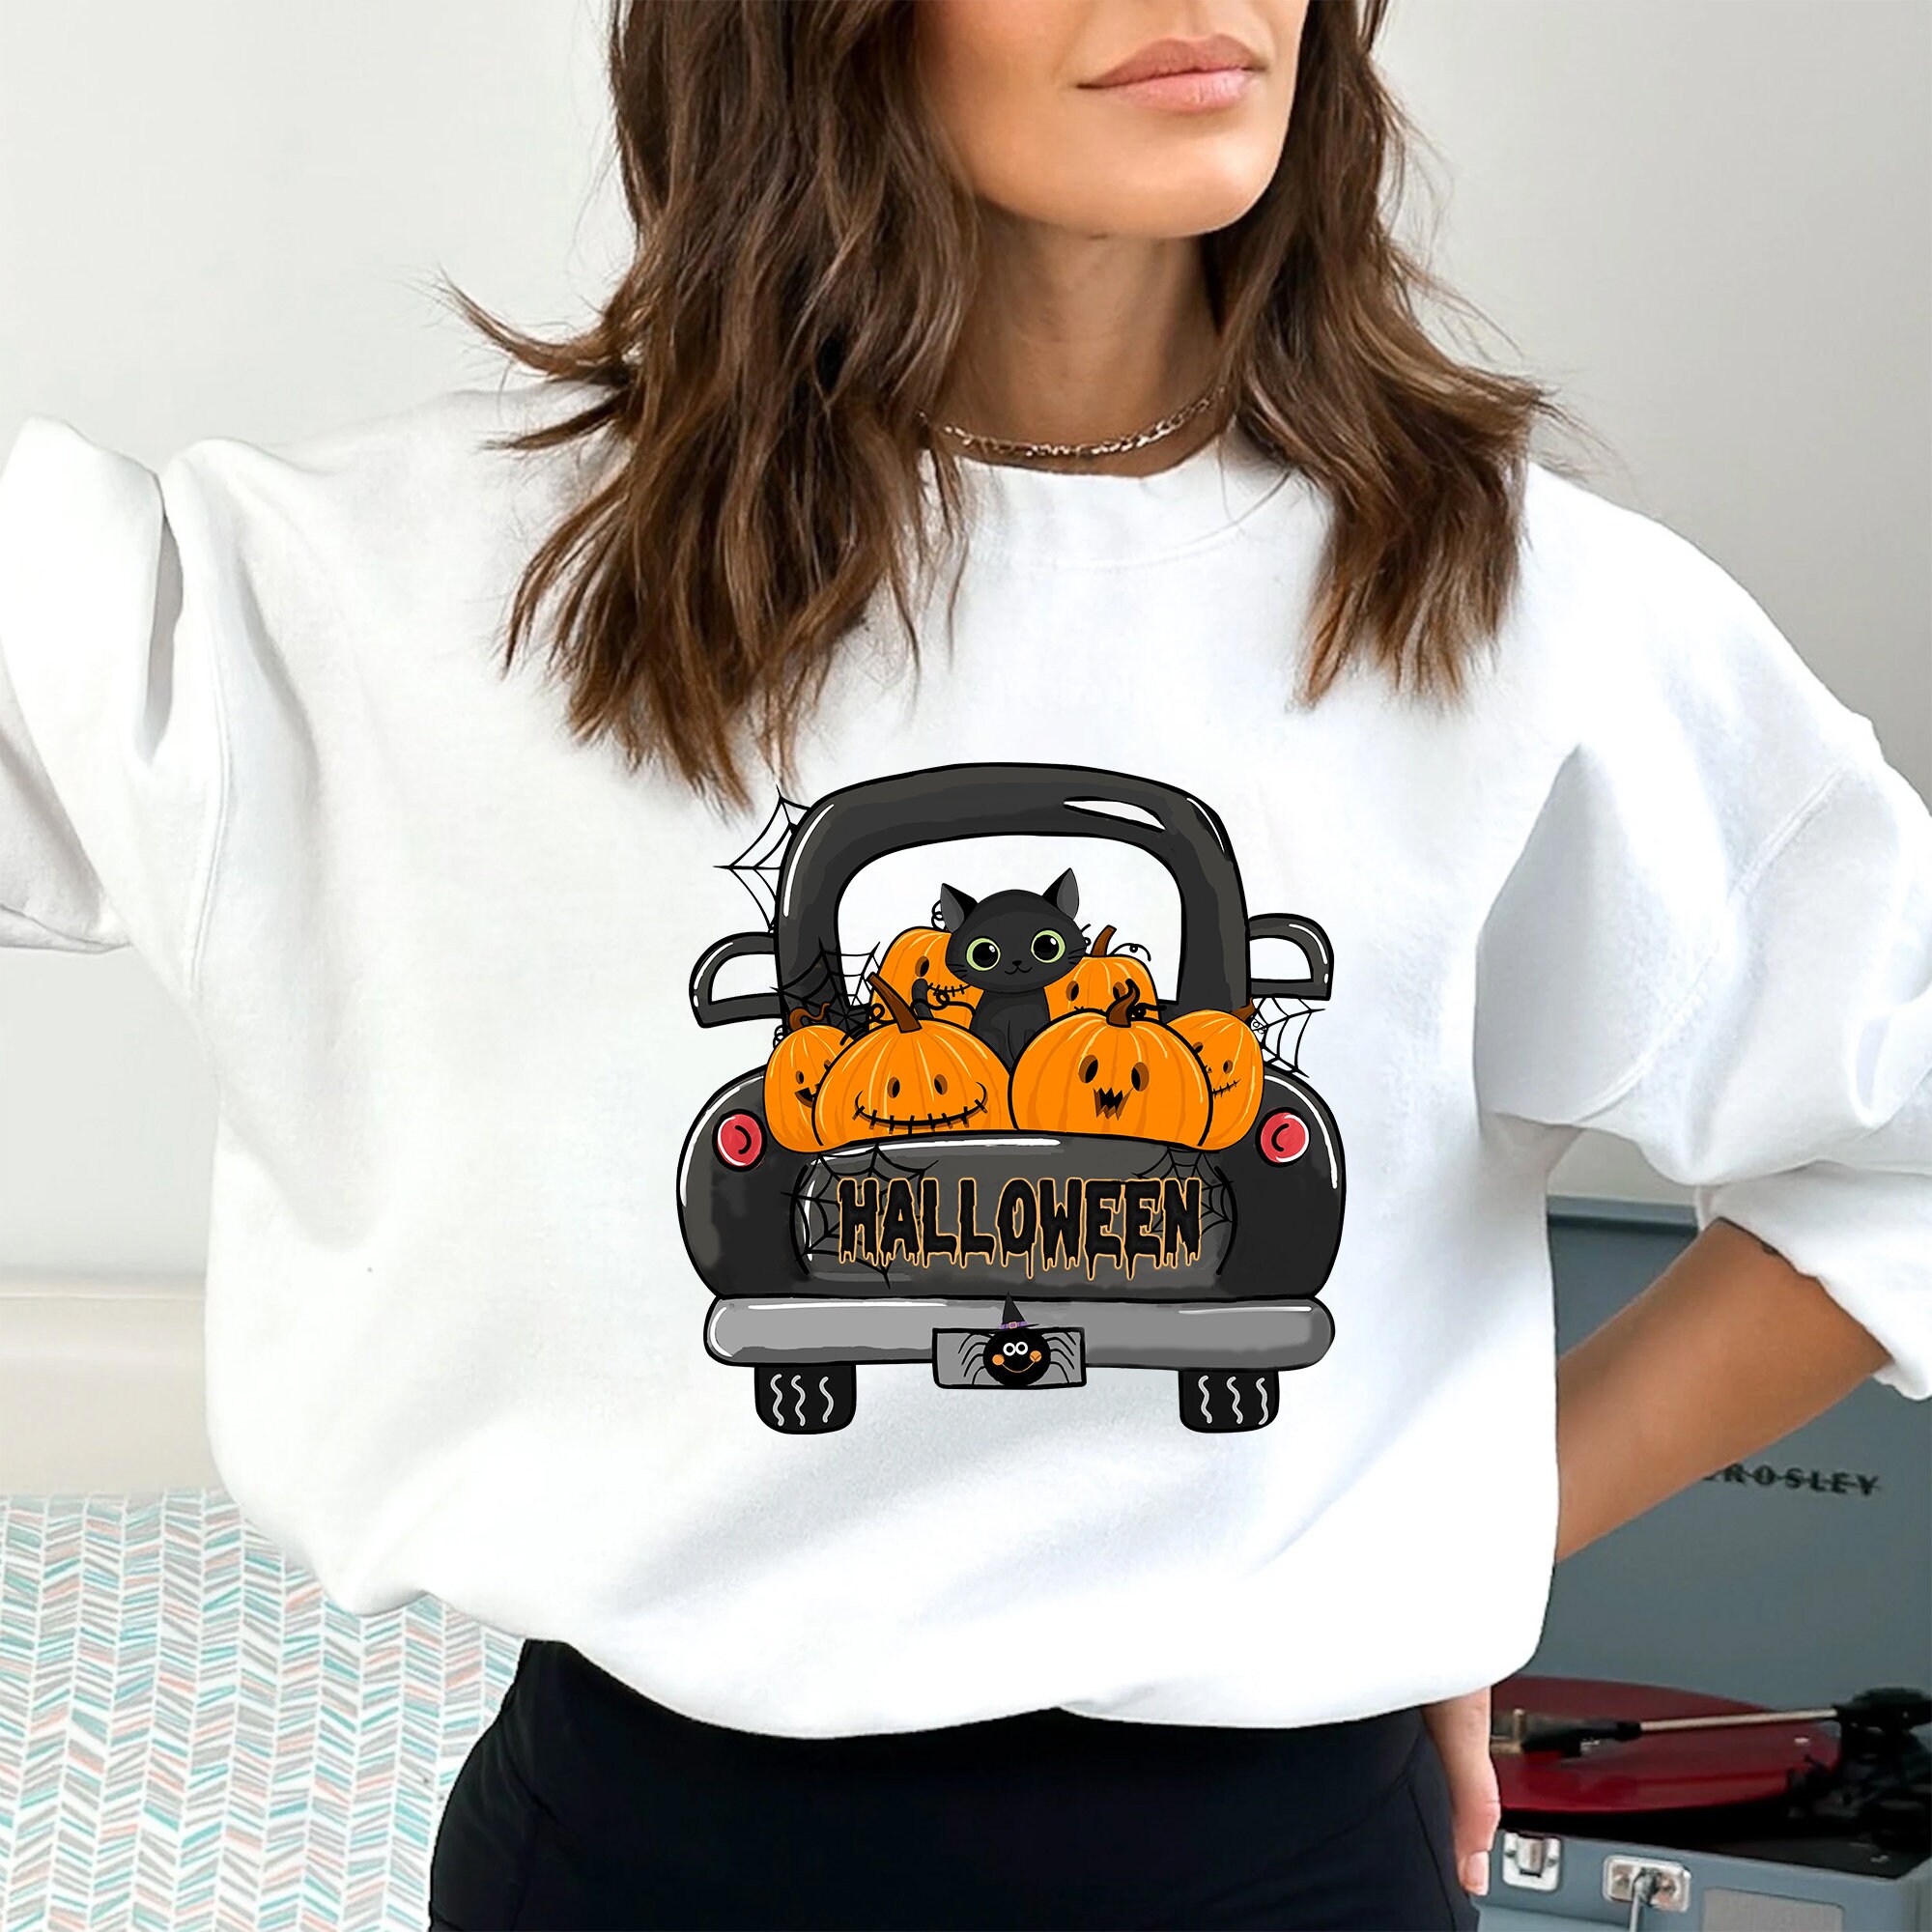 Discover Halloween Black Cat Sweatshirt, Halloween Sweatshirt,  Pumpkin Shirt, Black Cat Halloween Sweatshirt, Pumpkin and Black Cat Shirt